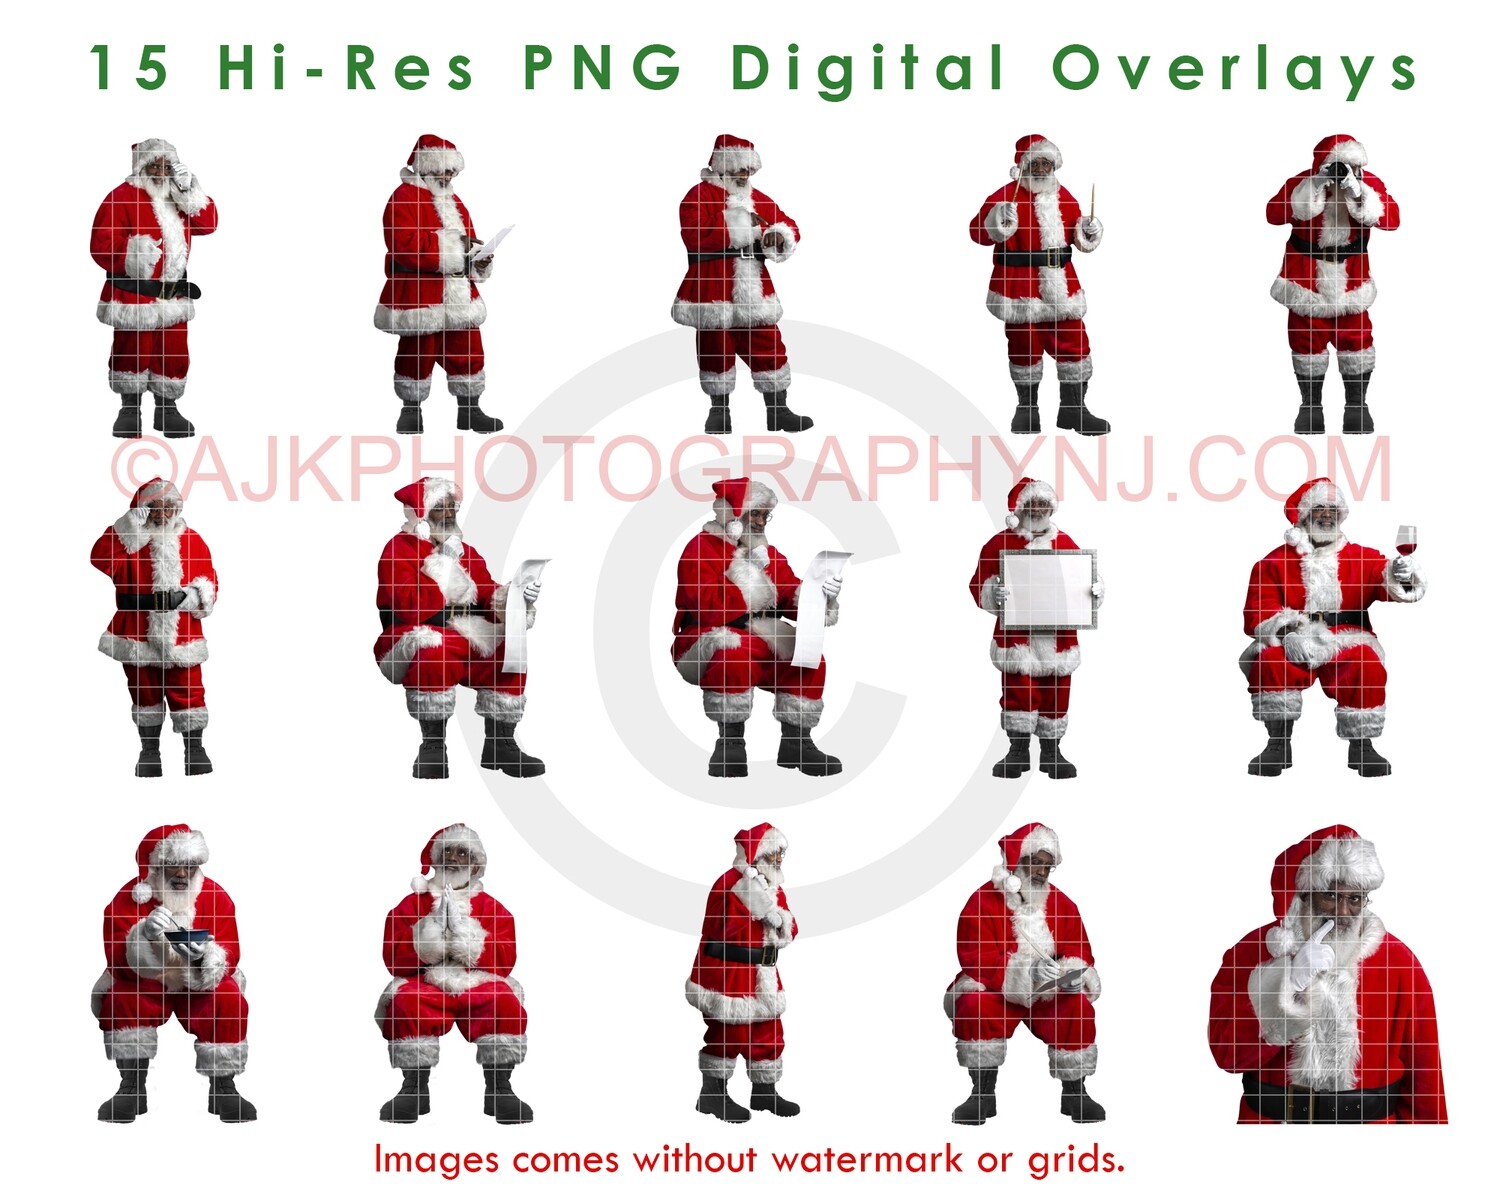 15 Santa Overlays, Hi Resolution PNG Digital Overlay Black Santas, Big Bundle, Santa Claus, Holiday, Christmas by Eric Miele from AJK Photography